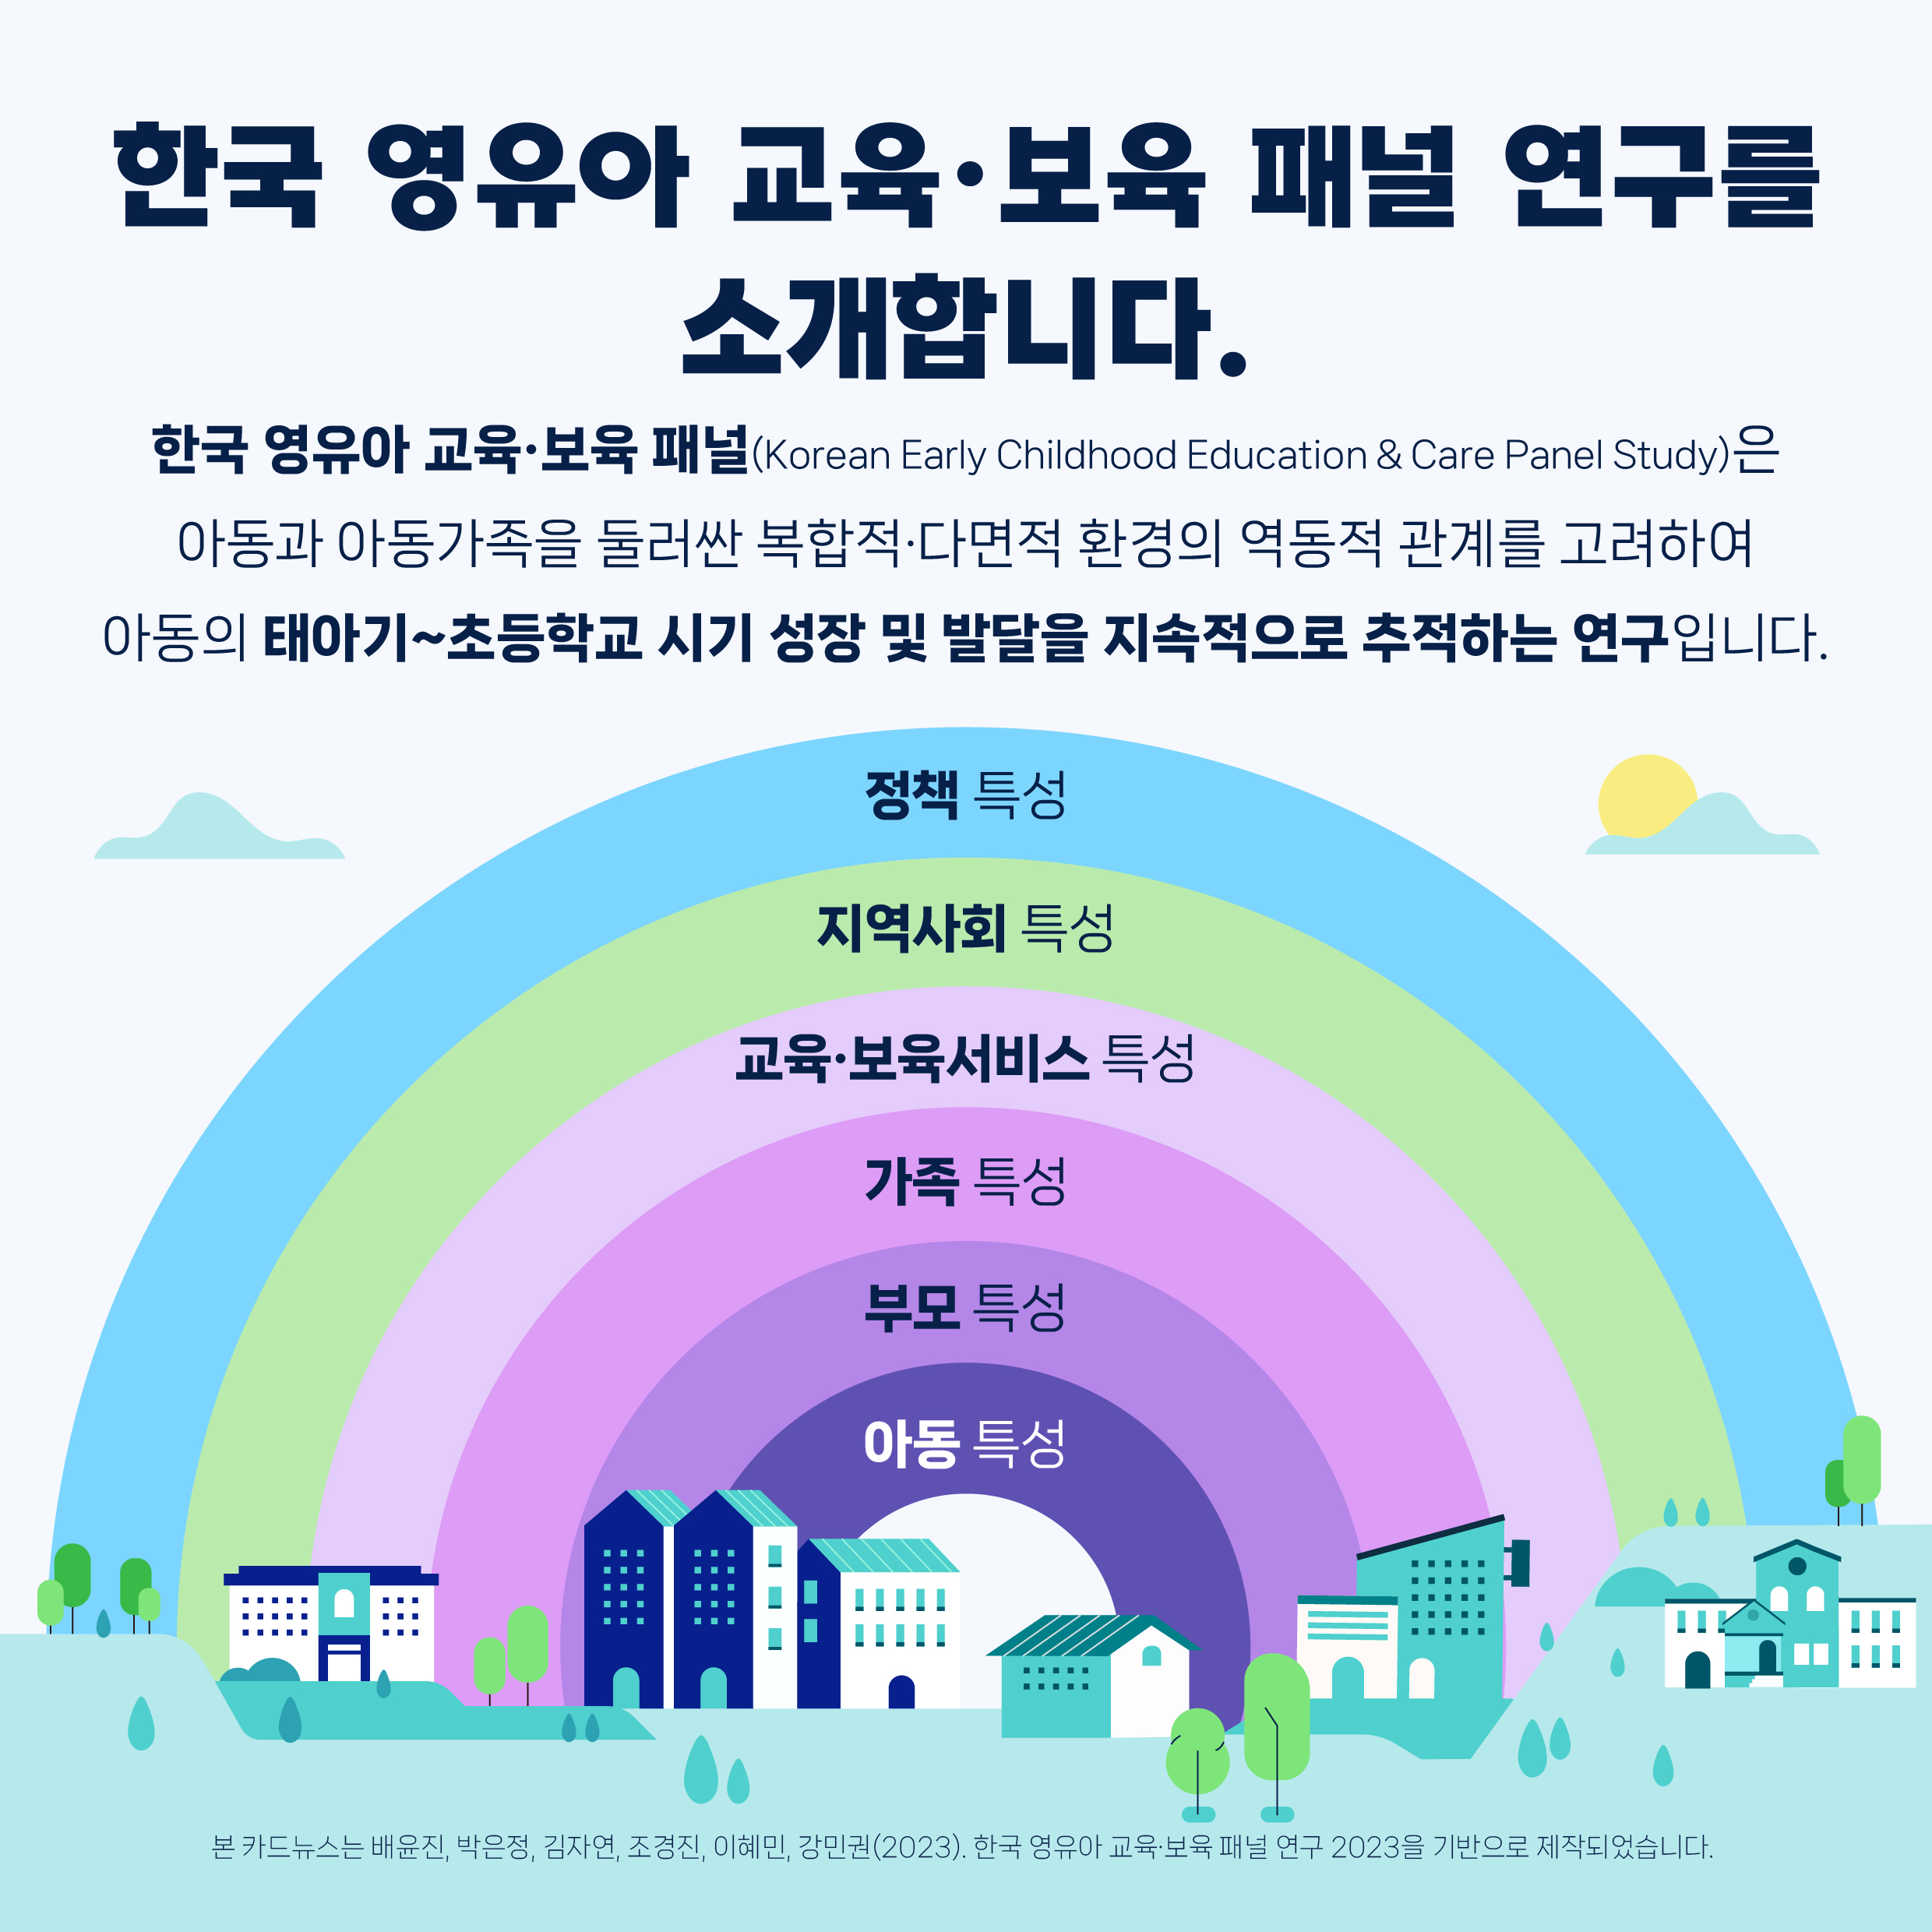 아이들은 자란다: 한국 영유아 교육·보육 패널 연구관련 이미지 2